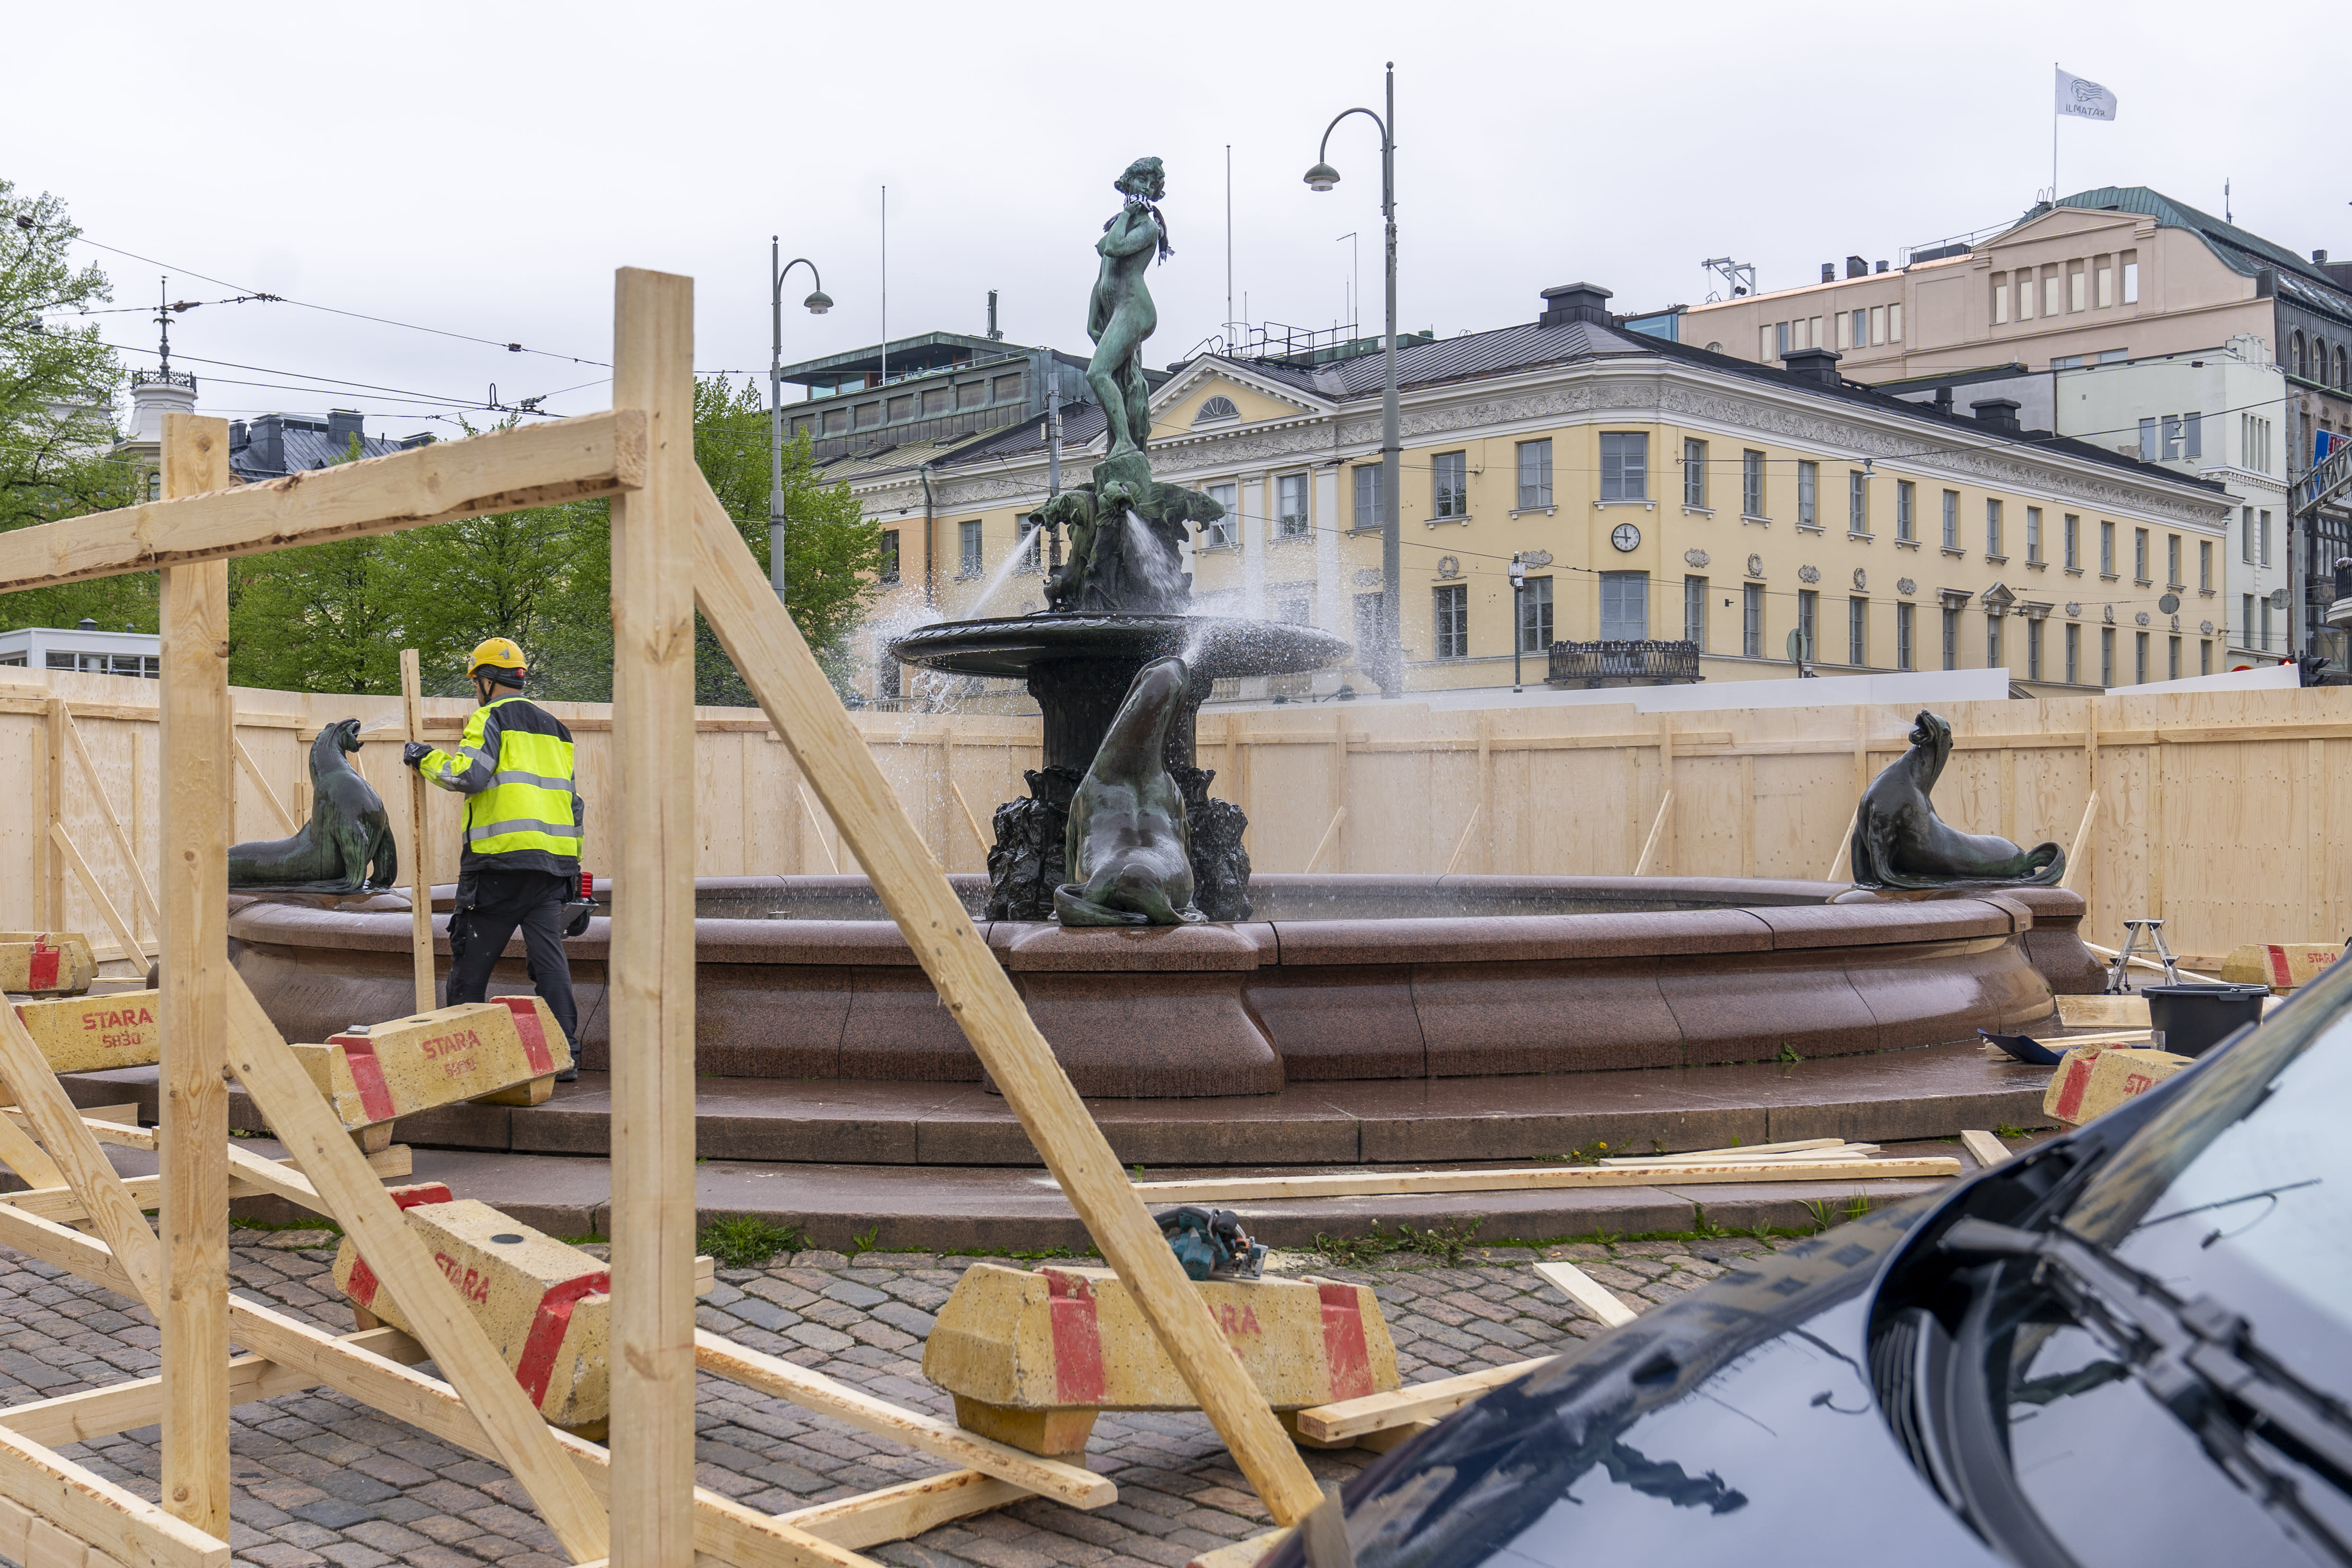 Helsinkis ikonischste Statue für Erholung und ein Facelifting